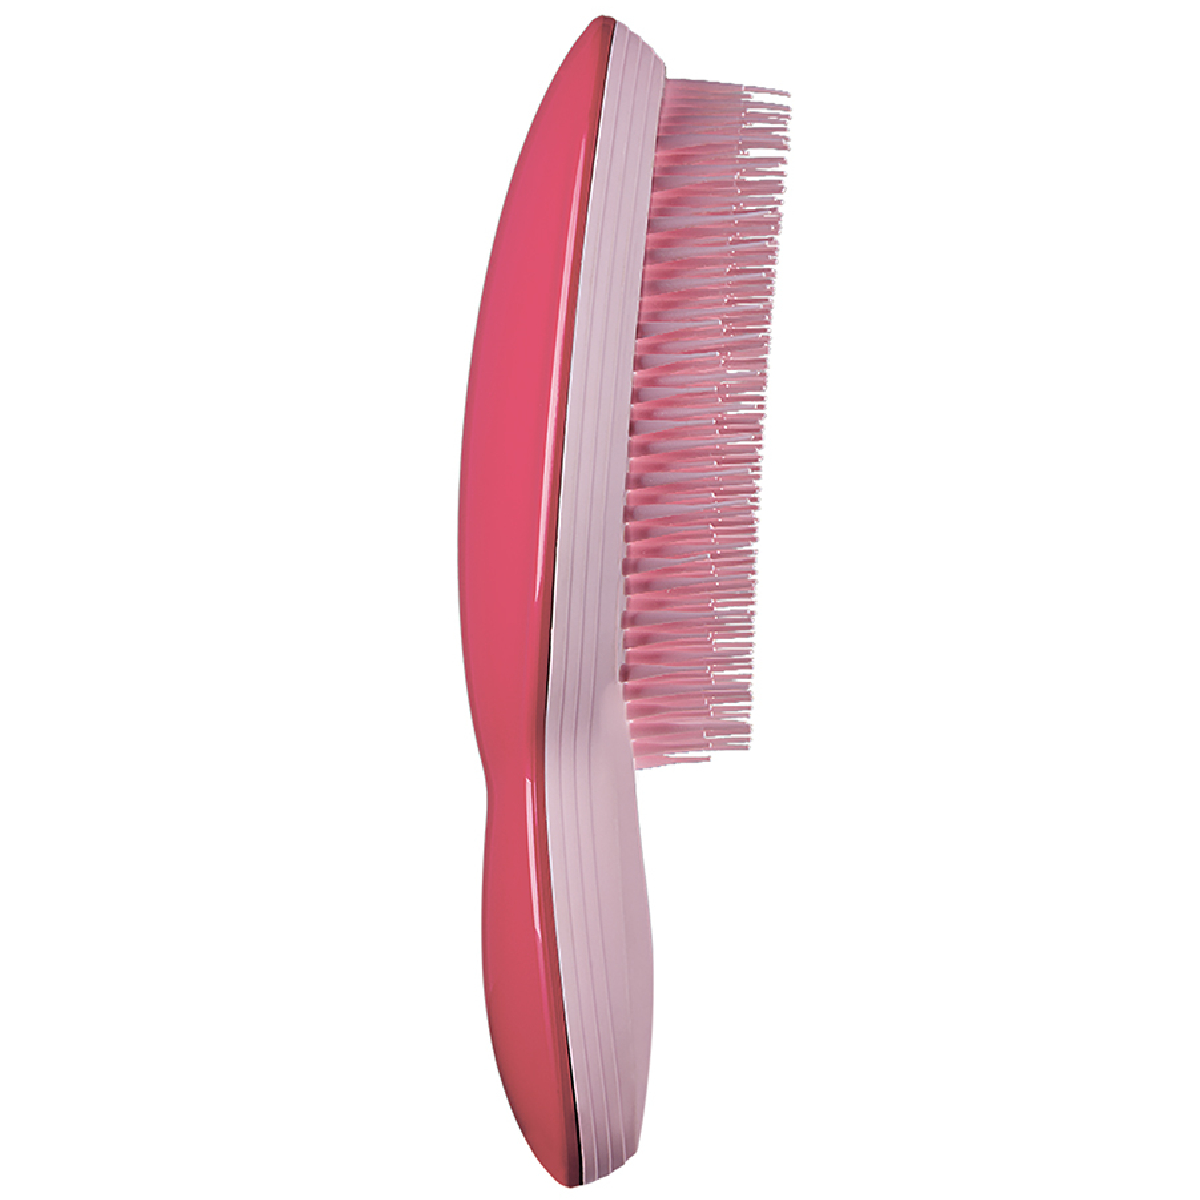 Tangle Teezer Расческа The Ultimate Pink, розовый, 1 шт (Tangle Teezer, The Ultimate) the ultimate vintage pink расчёска для волос tangle teezer